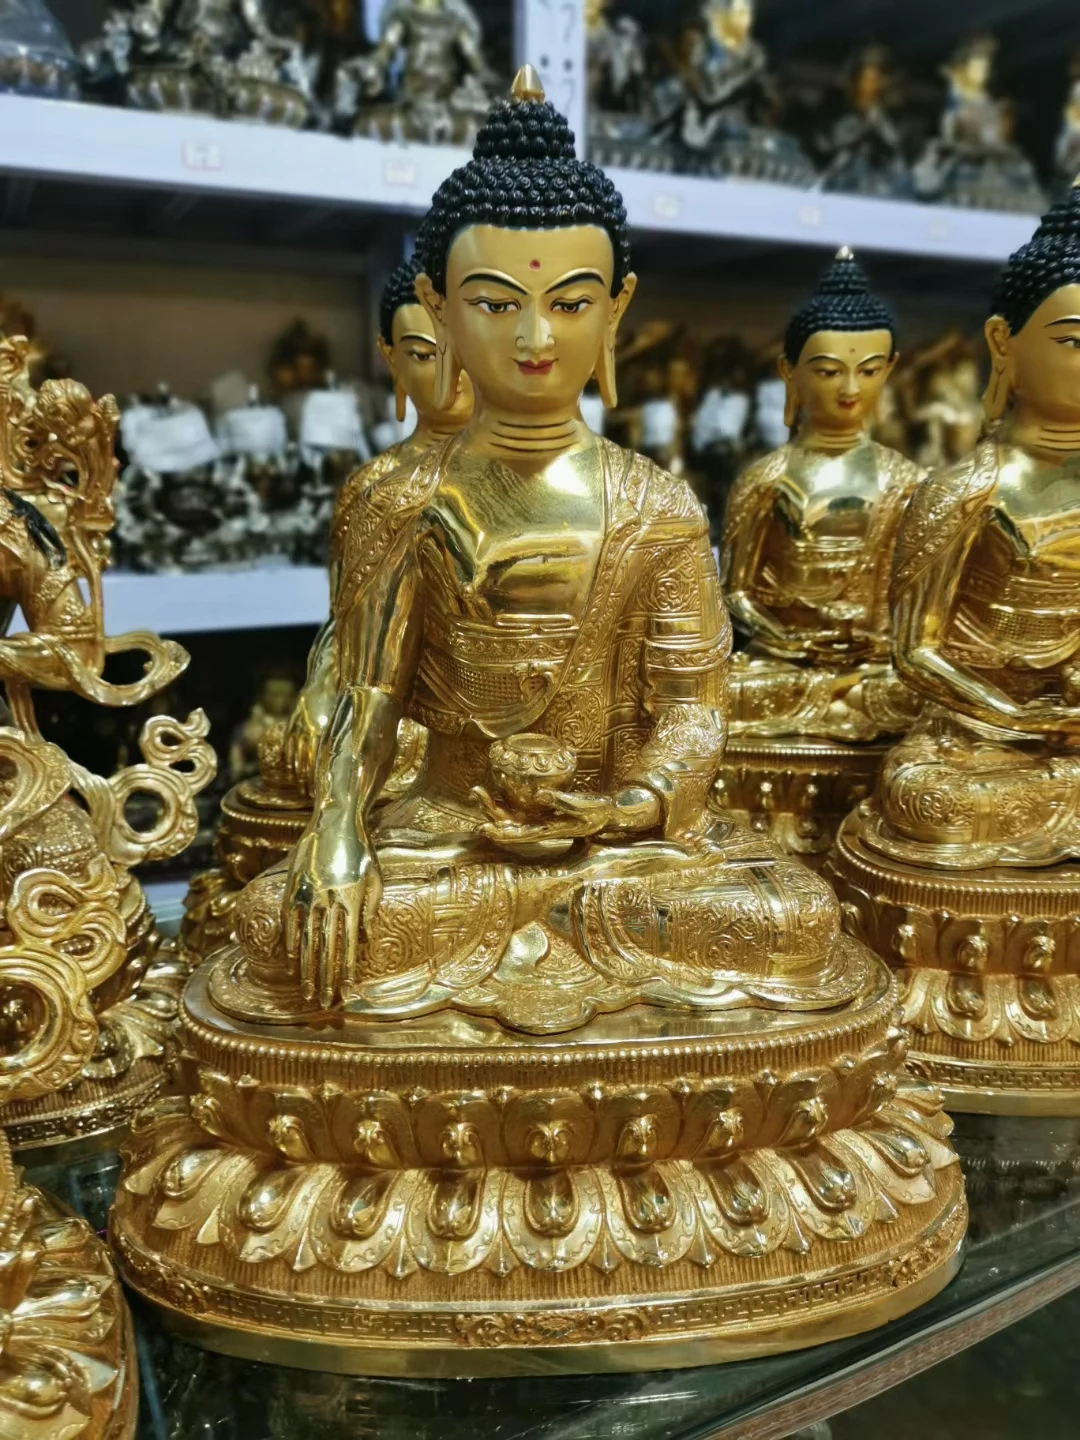 

Большая оптовая продажа буддистских товаров размером 44 см, тибетский буддизм, непальская позолоченная статуя сакамуни из латуни, статуя Будды, благословенная безопасность, удача